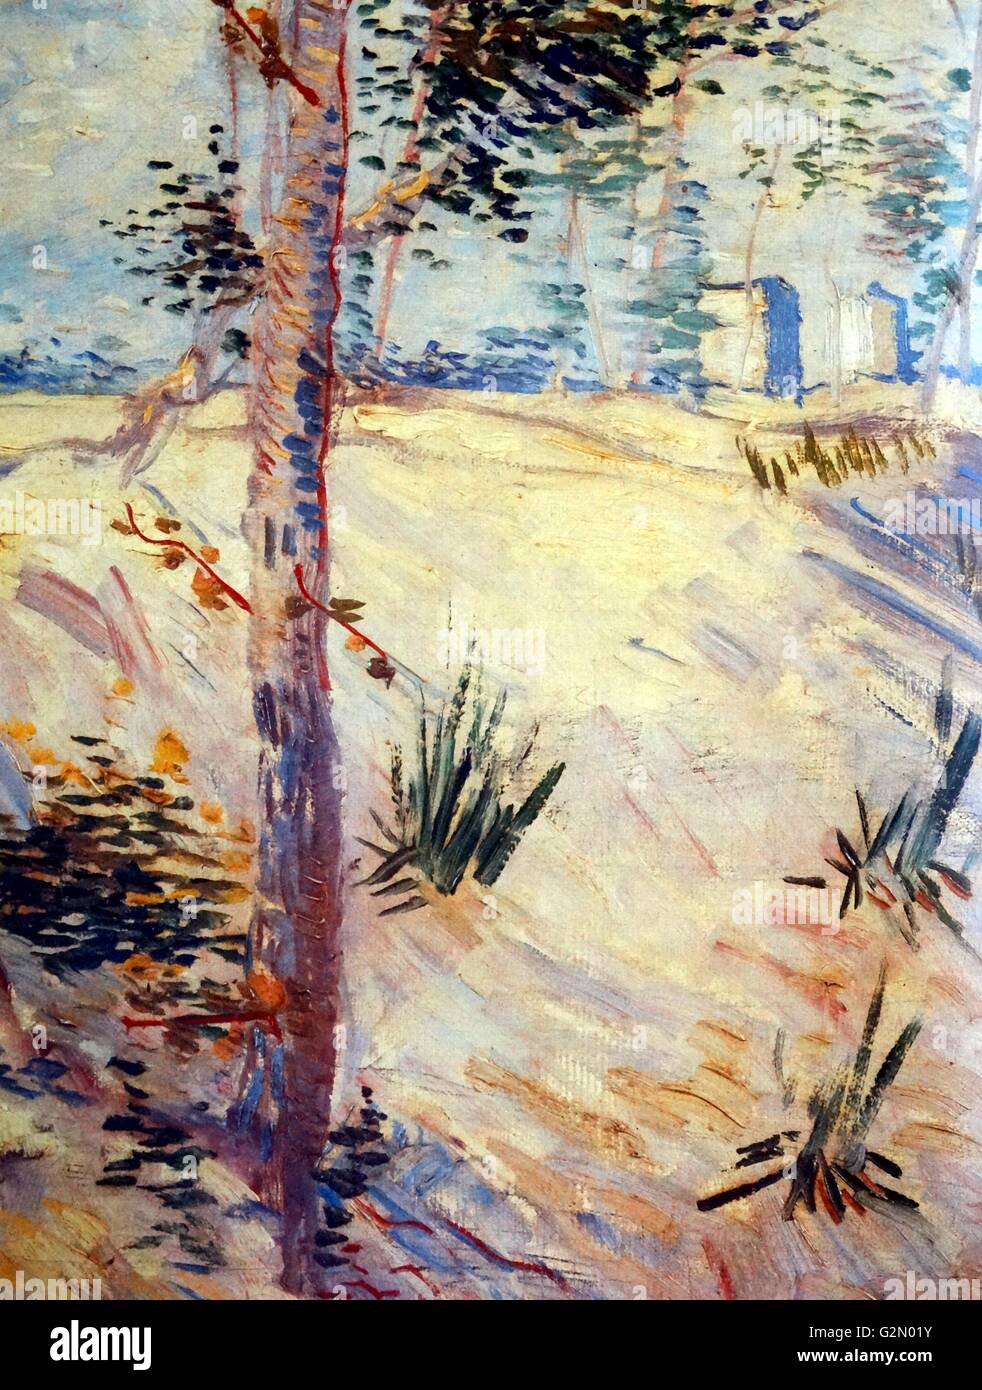 Óleo sobre lienzo pintada por el famoso artista holandés Vincent Van Gogh (30 de marzo de 1853 - 29 de julio de 1890) el trabajo titulado 'árboles en un campo en un día soleado". Terminado en 1887. Foto de stock